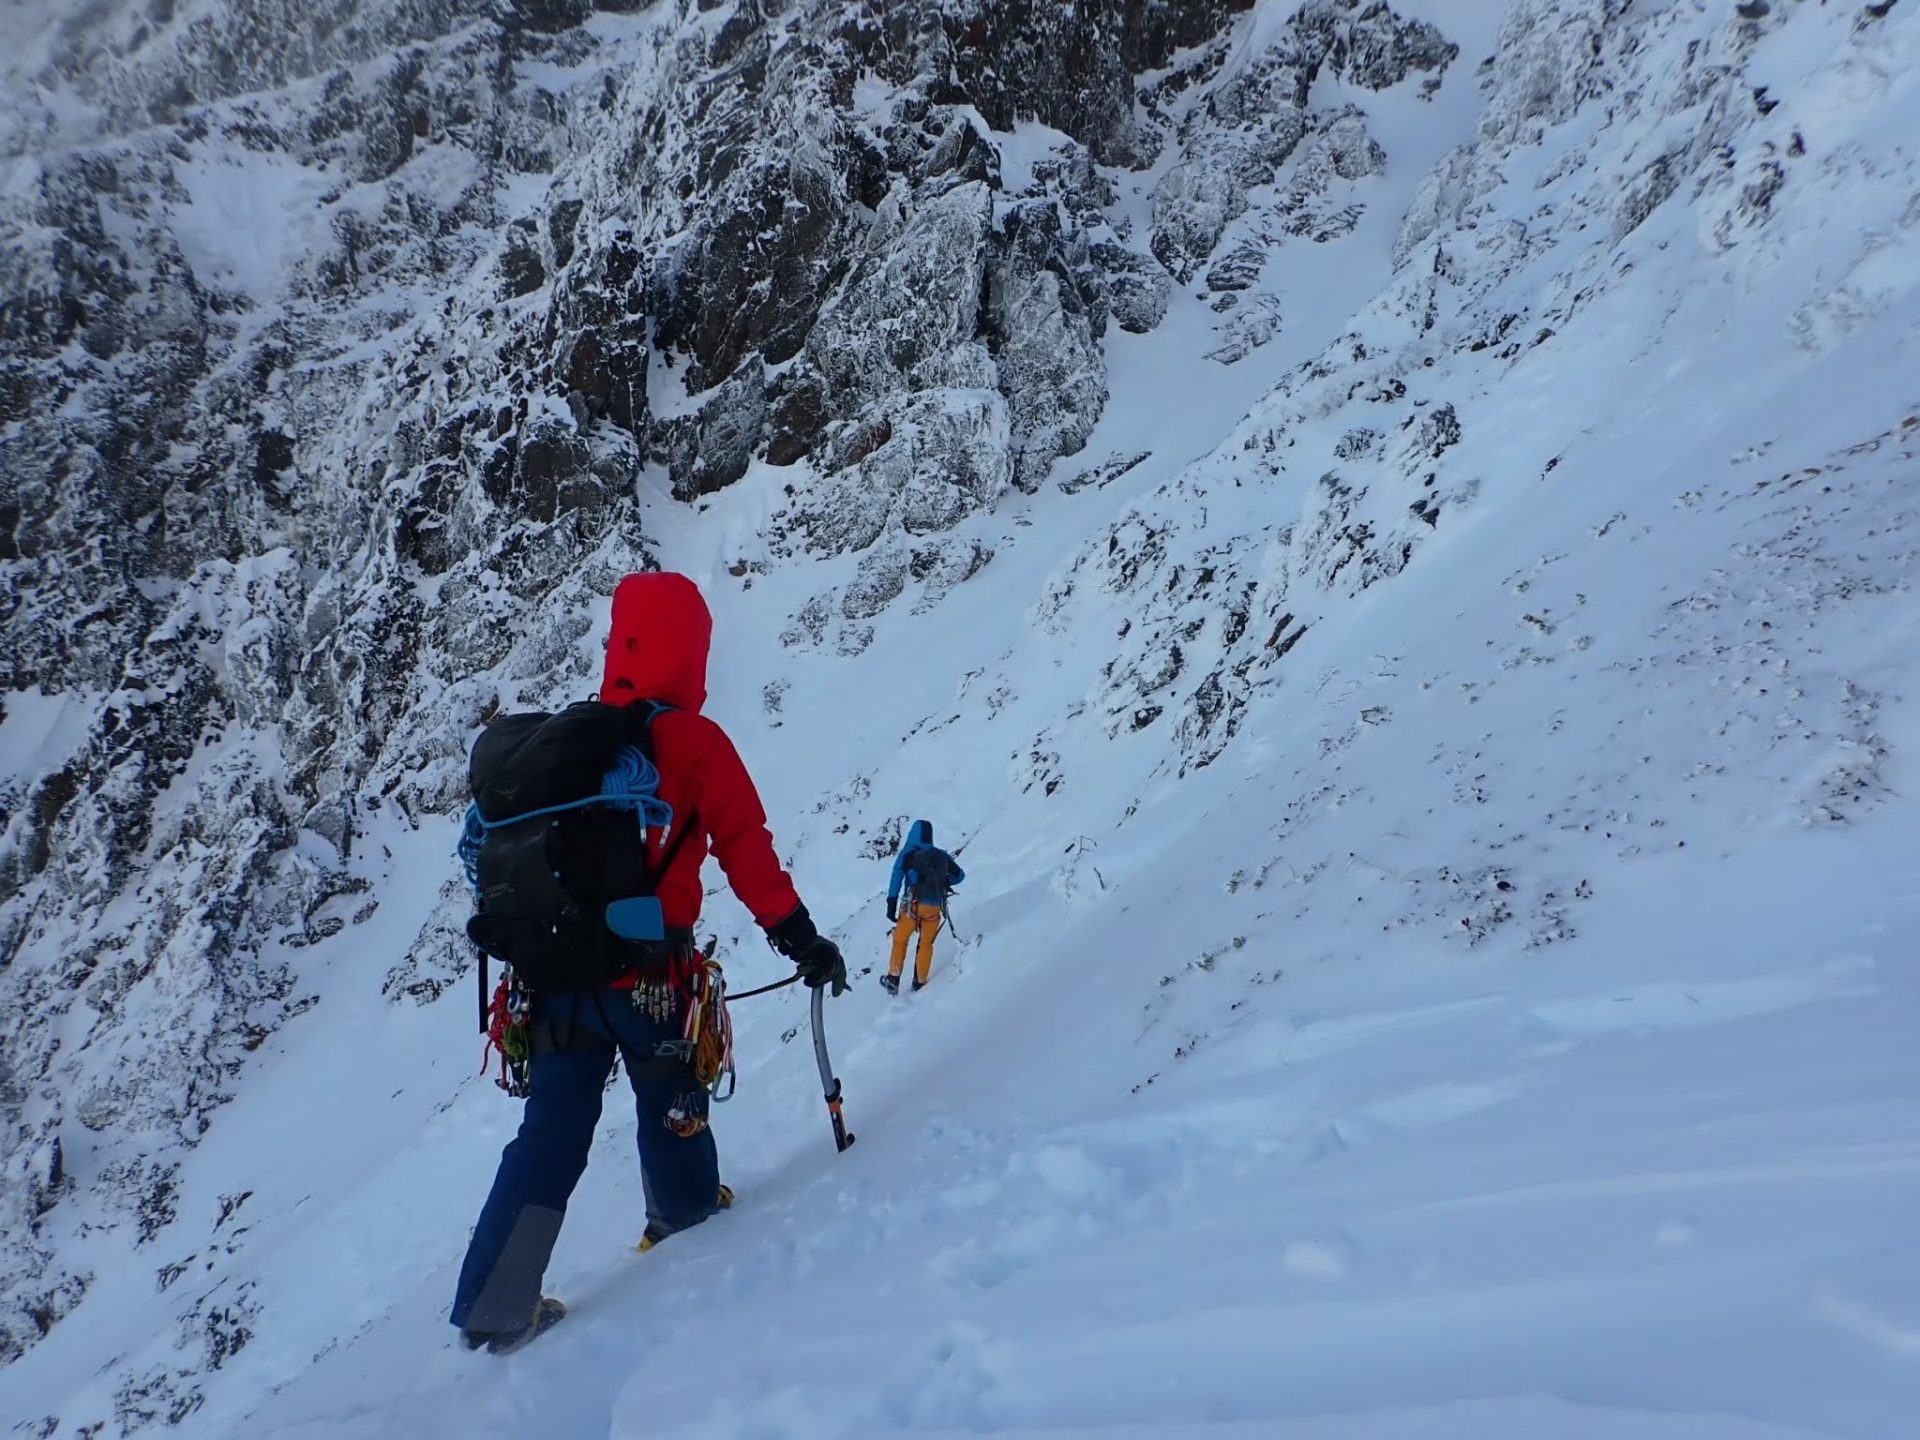 取付へのトラバース
ここは上の様子を見ながら雪崩に気をつけて歩く